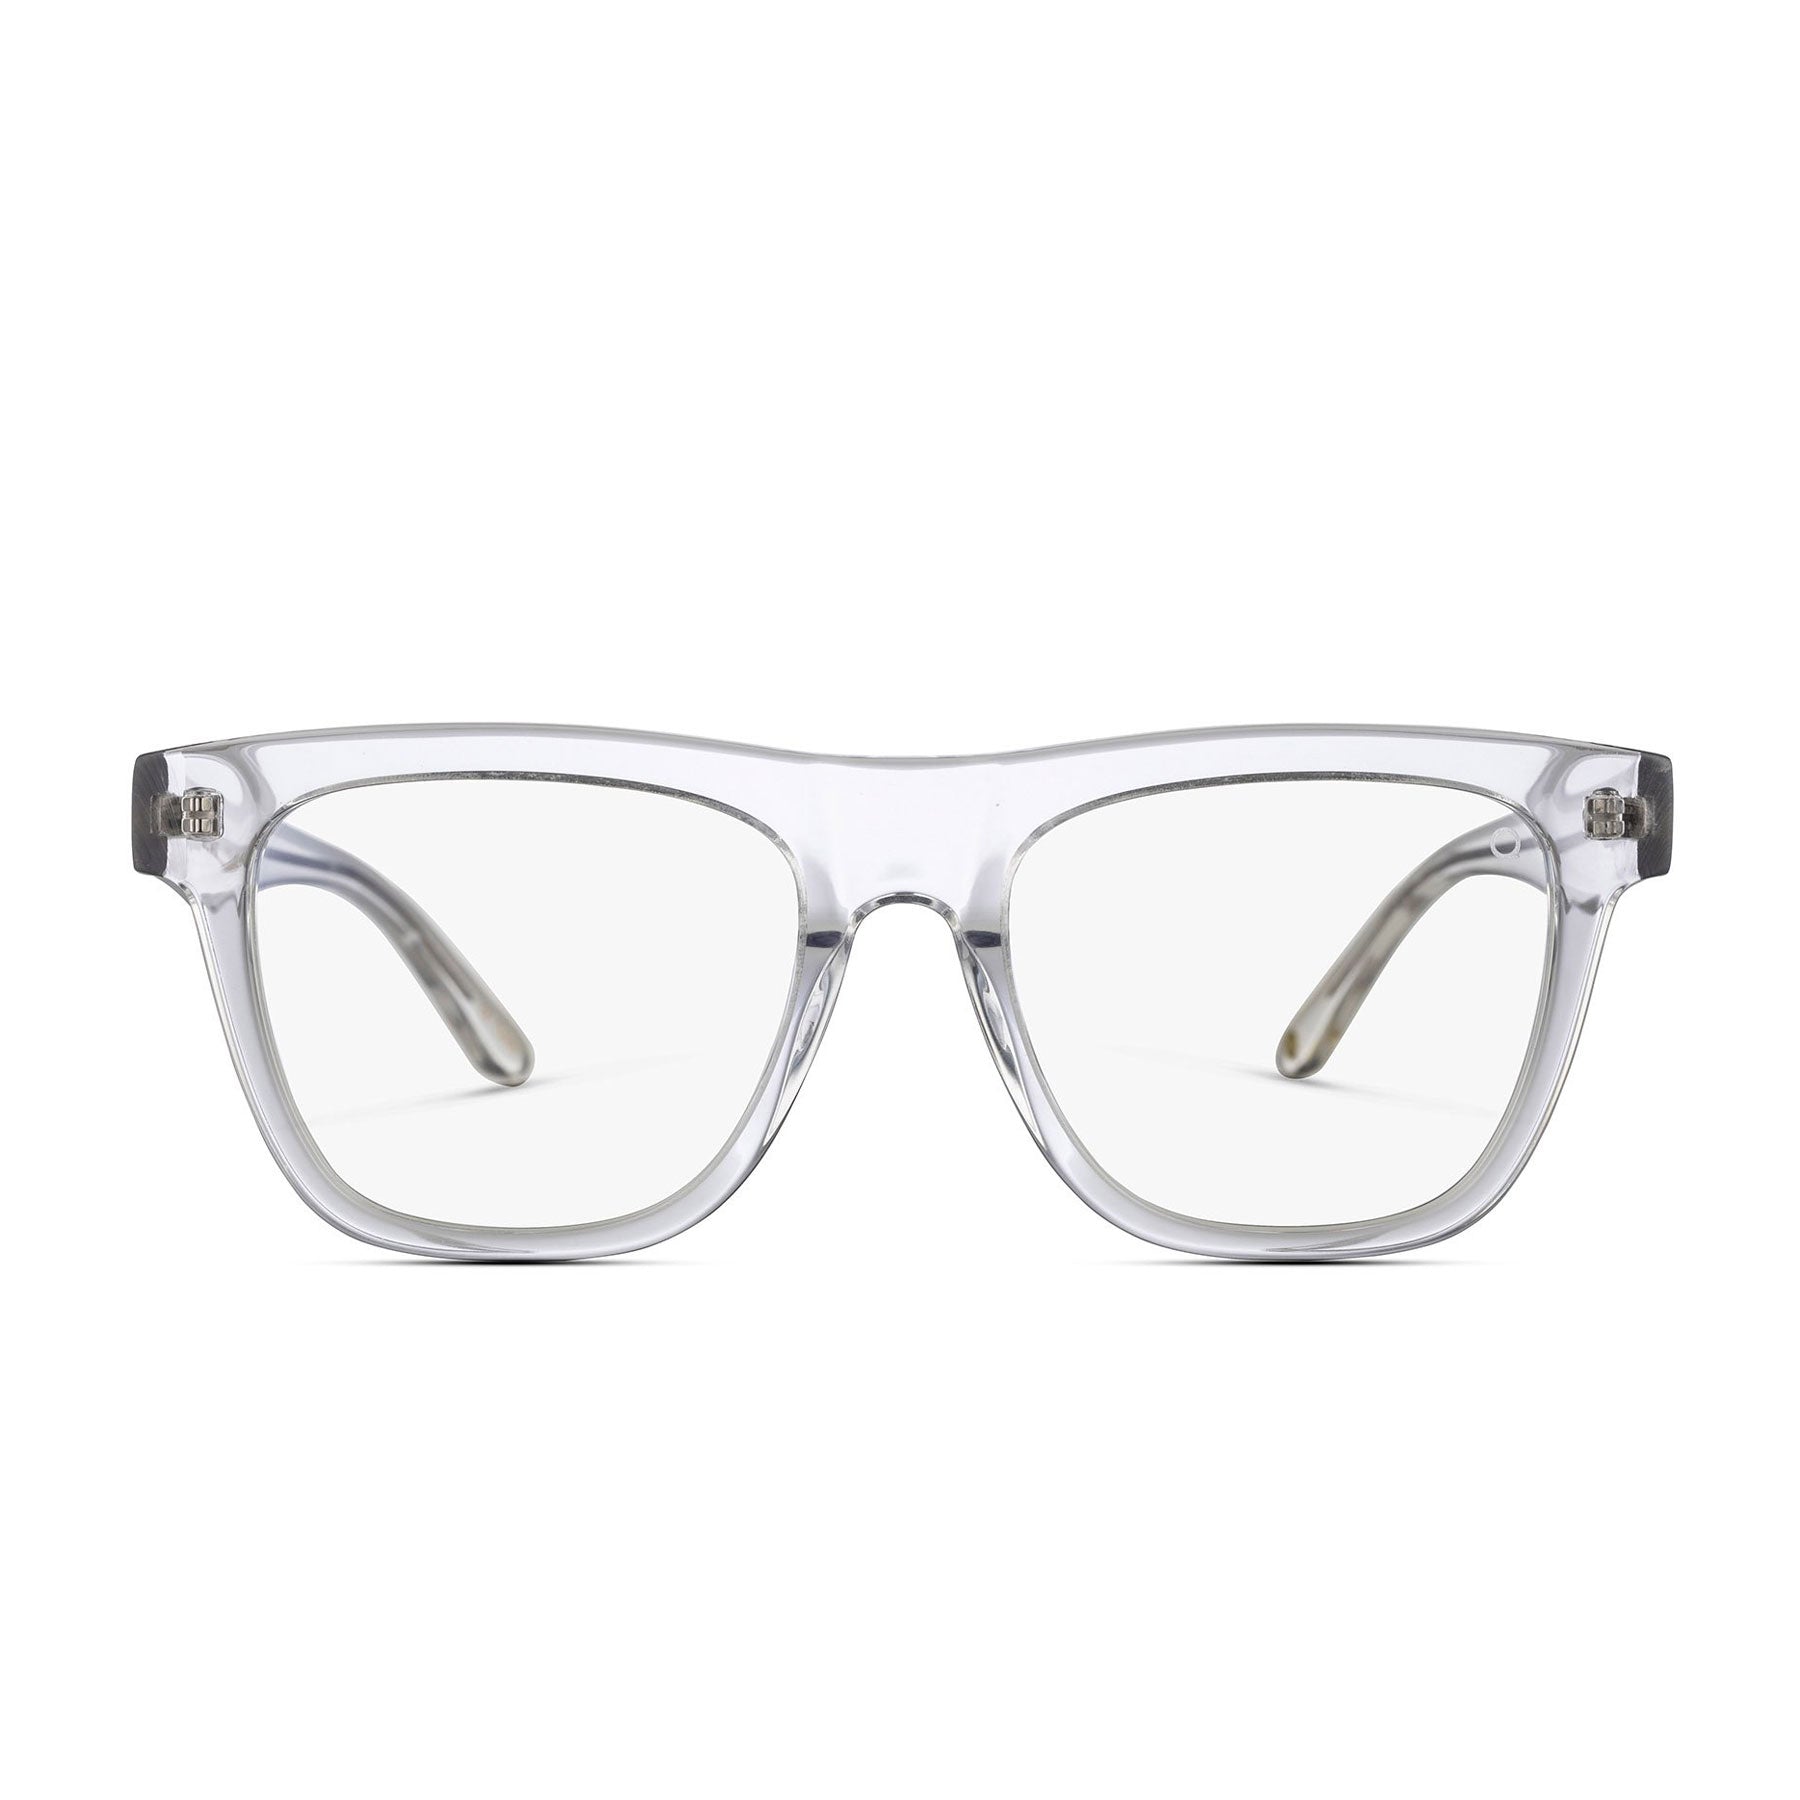 light blue glasses frames